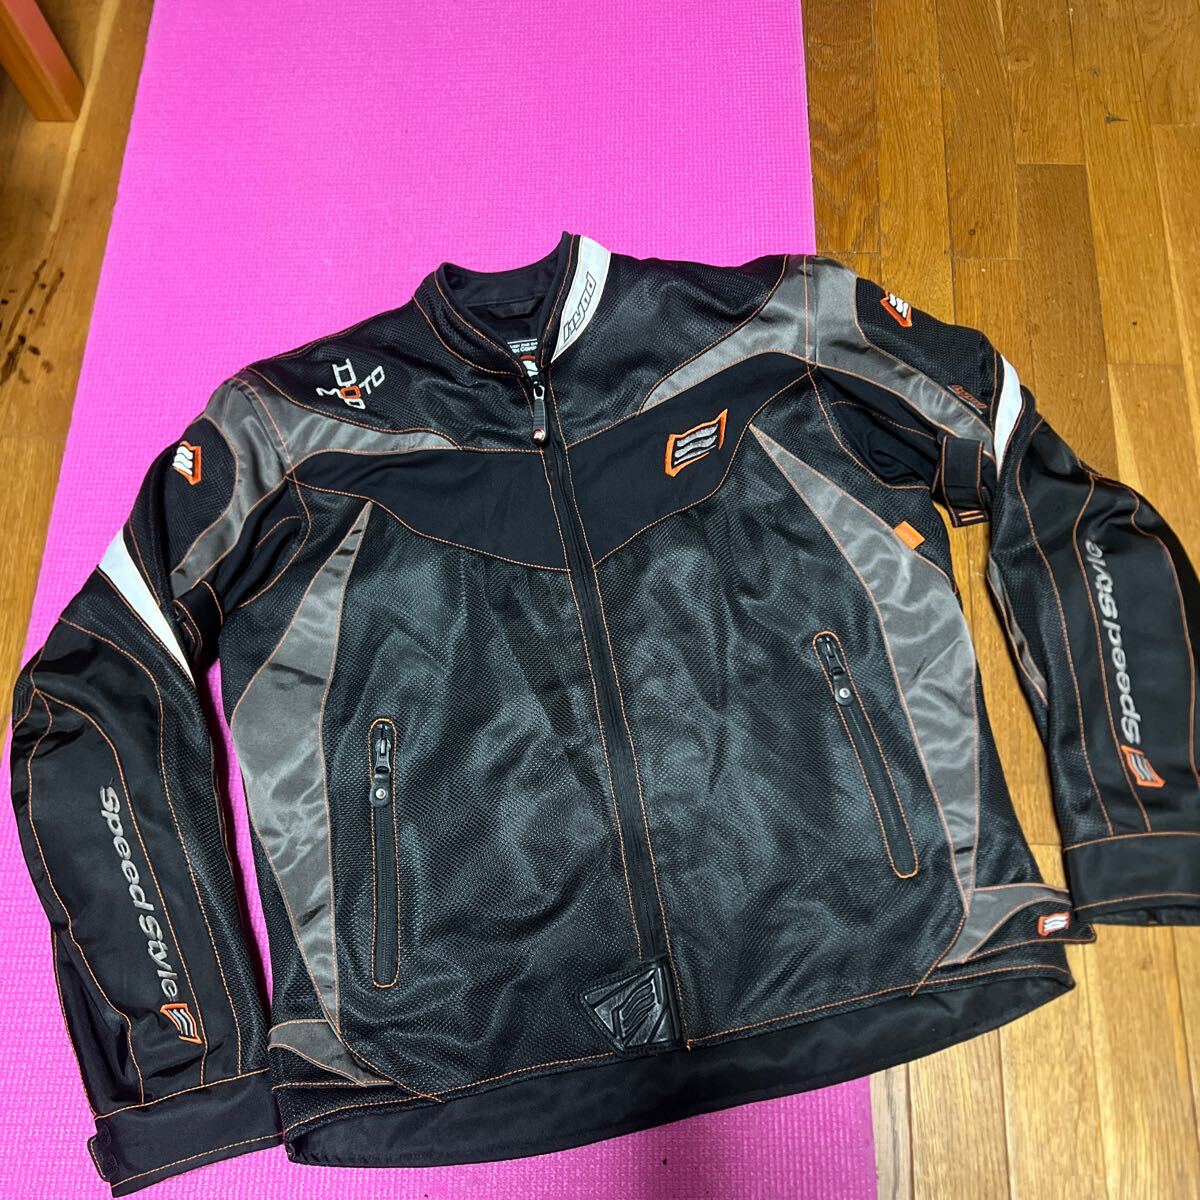 ◆HYOD STJ026DN ST-S NEO-SPRINT D3O メッシュジャケット LLサイズ USED美品◆ブラックオレンジステッチの画像1